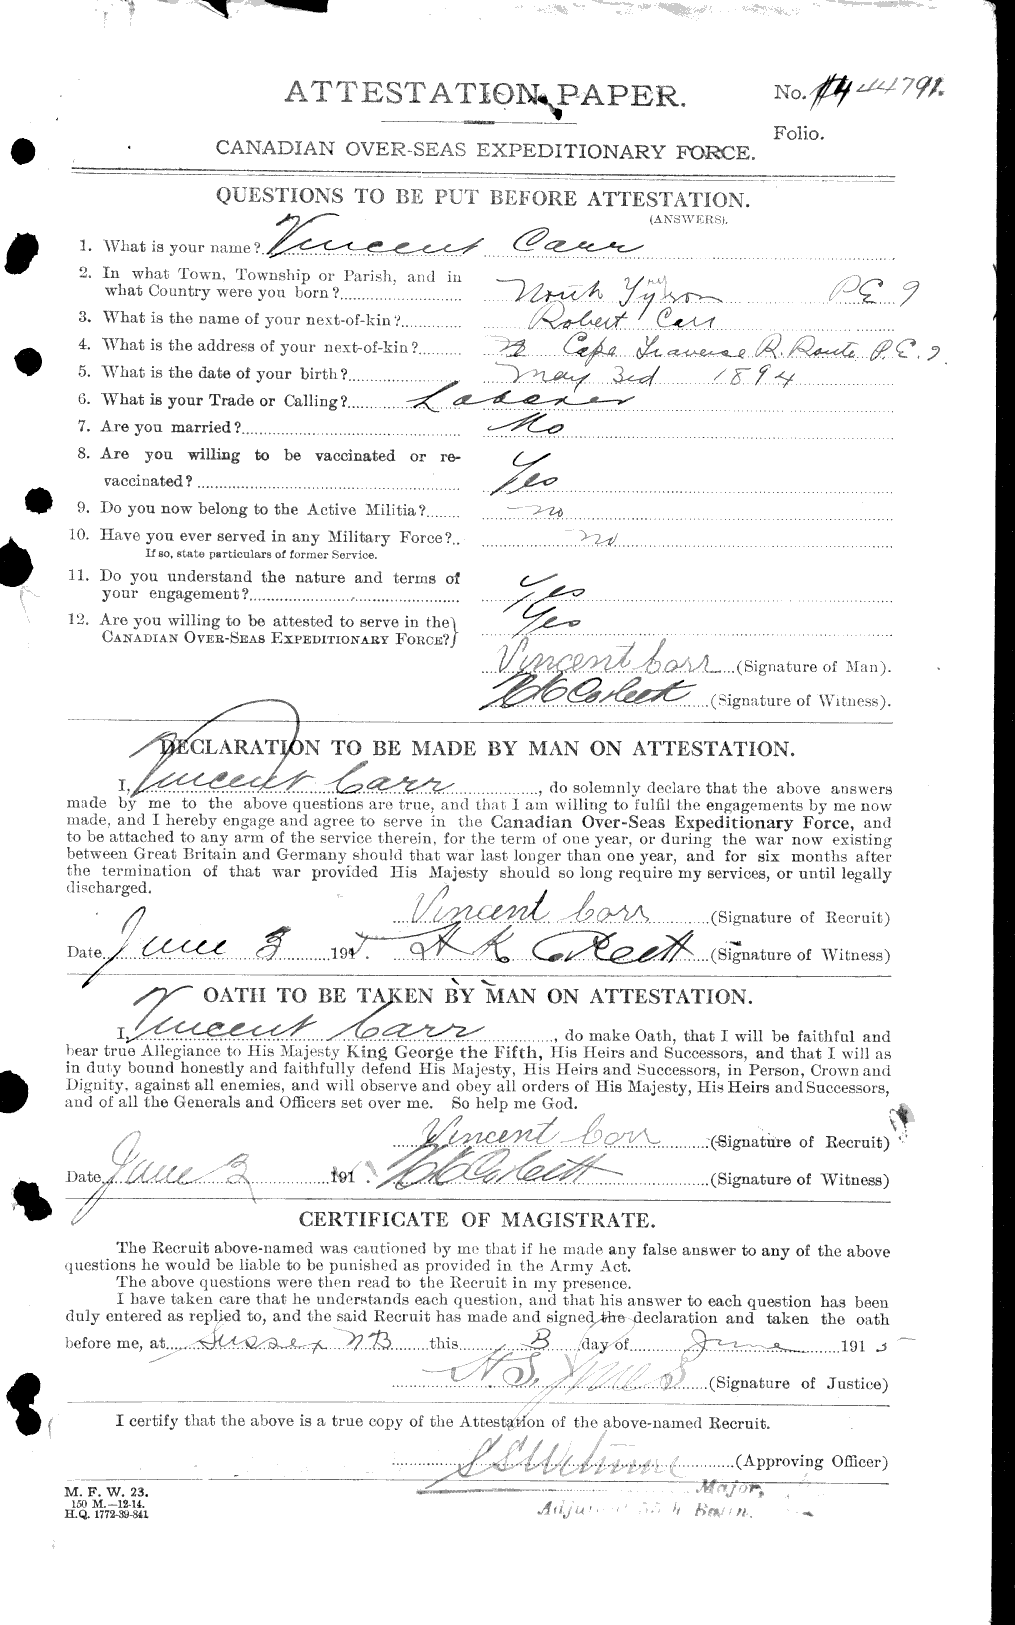 Dossiers du Personnel de la Première Guerre mondiale - CEC 011247a